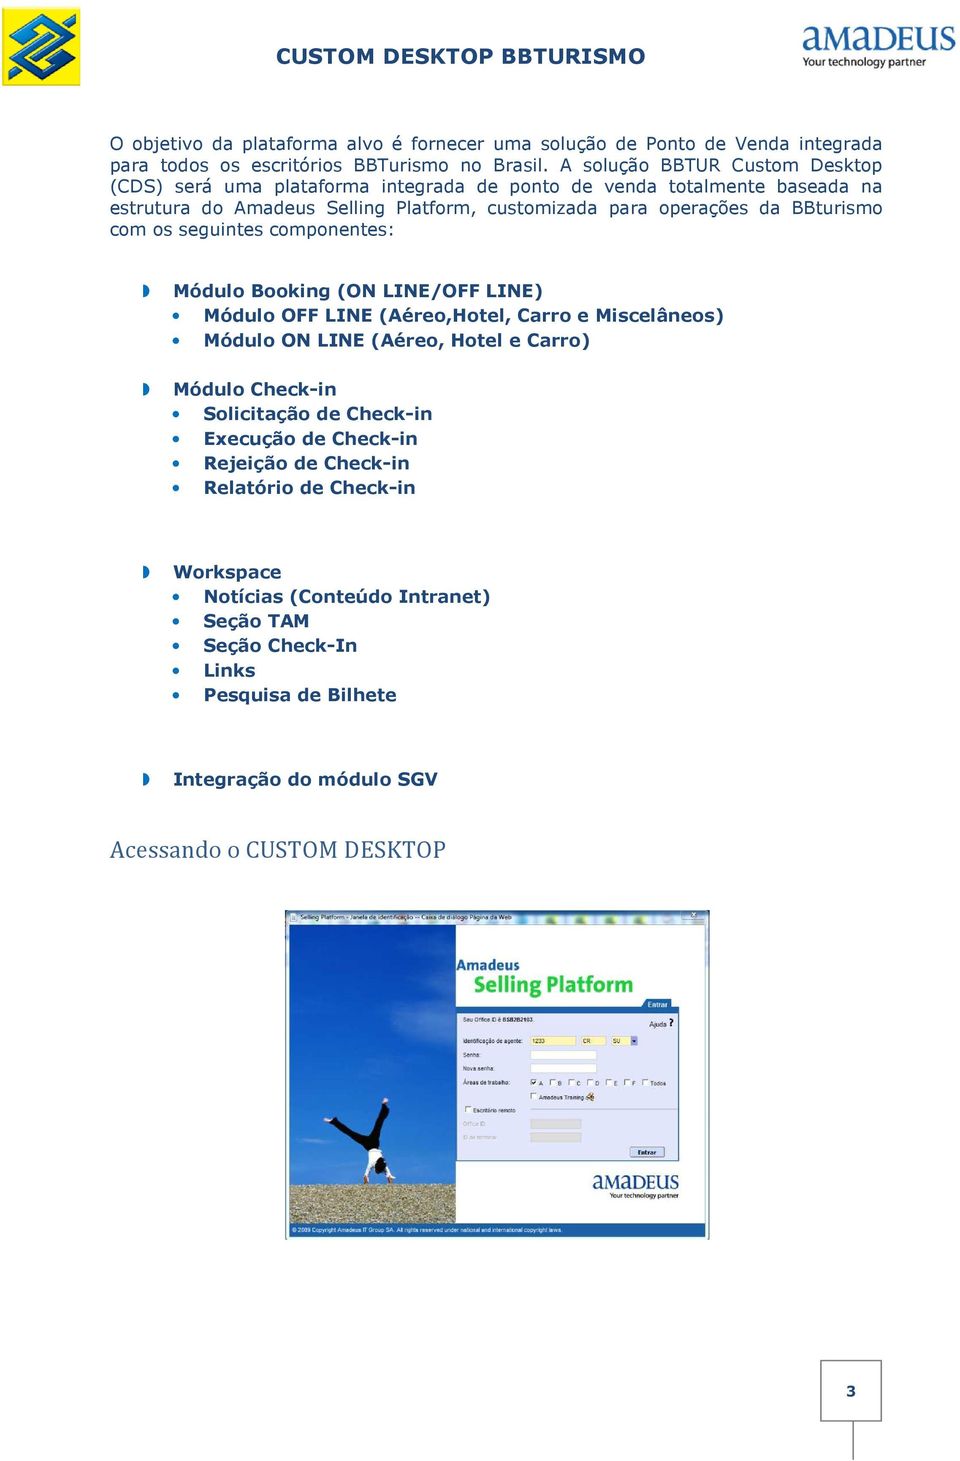 BBturismo com os seguintes componentes: Módulo Booking (ON LINE/OFF LINE) Módulo OFF LINE (Aéreo,Hotel, Carro e Miscelâneos) Módulo ON LINE (Aéreo, Hotel e Carro) Módulo Check-in